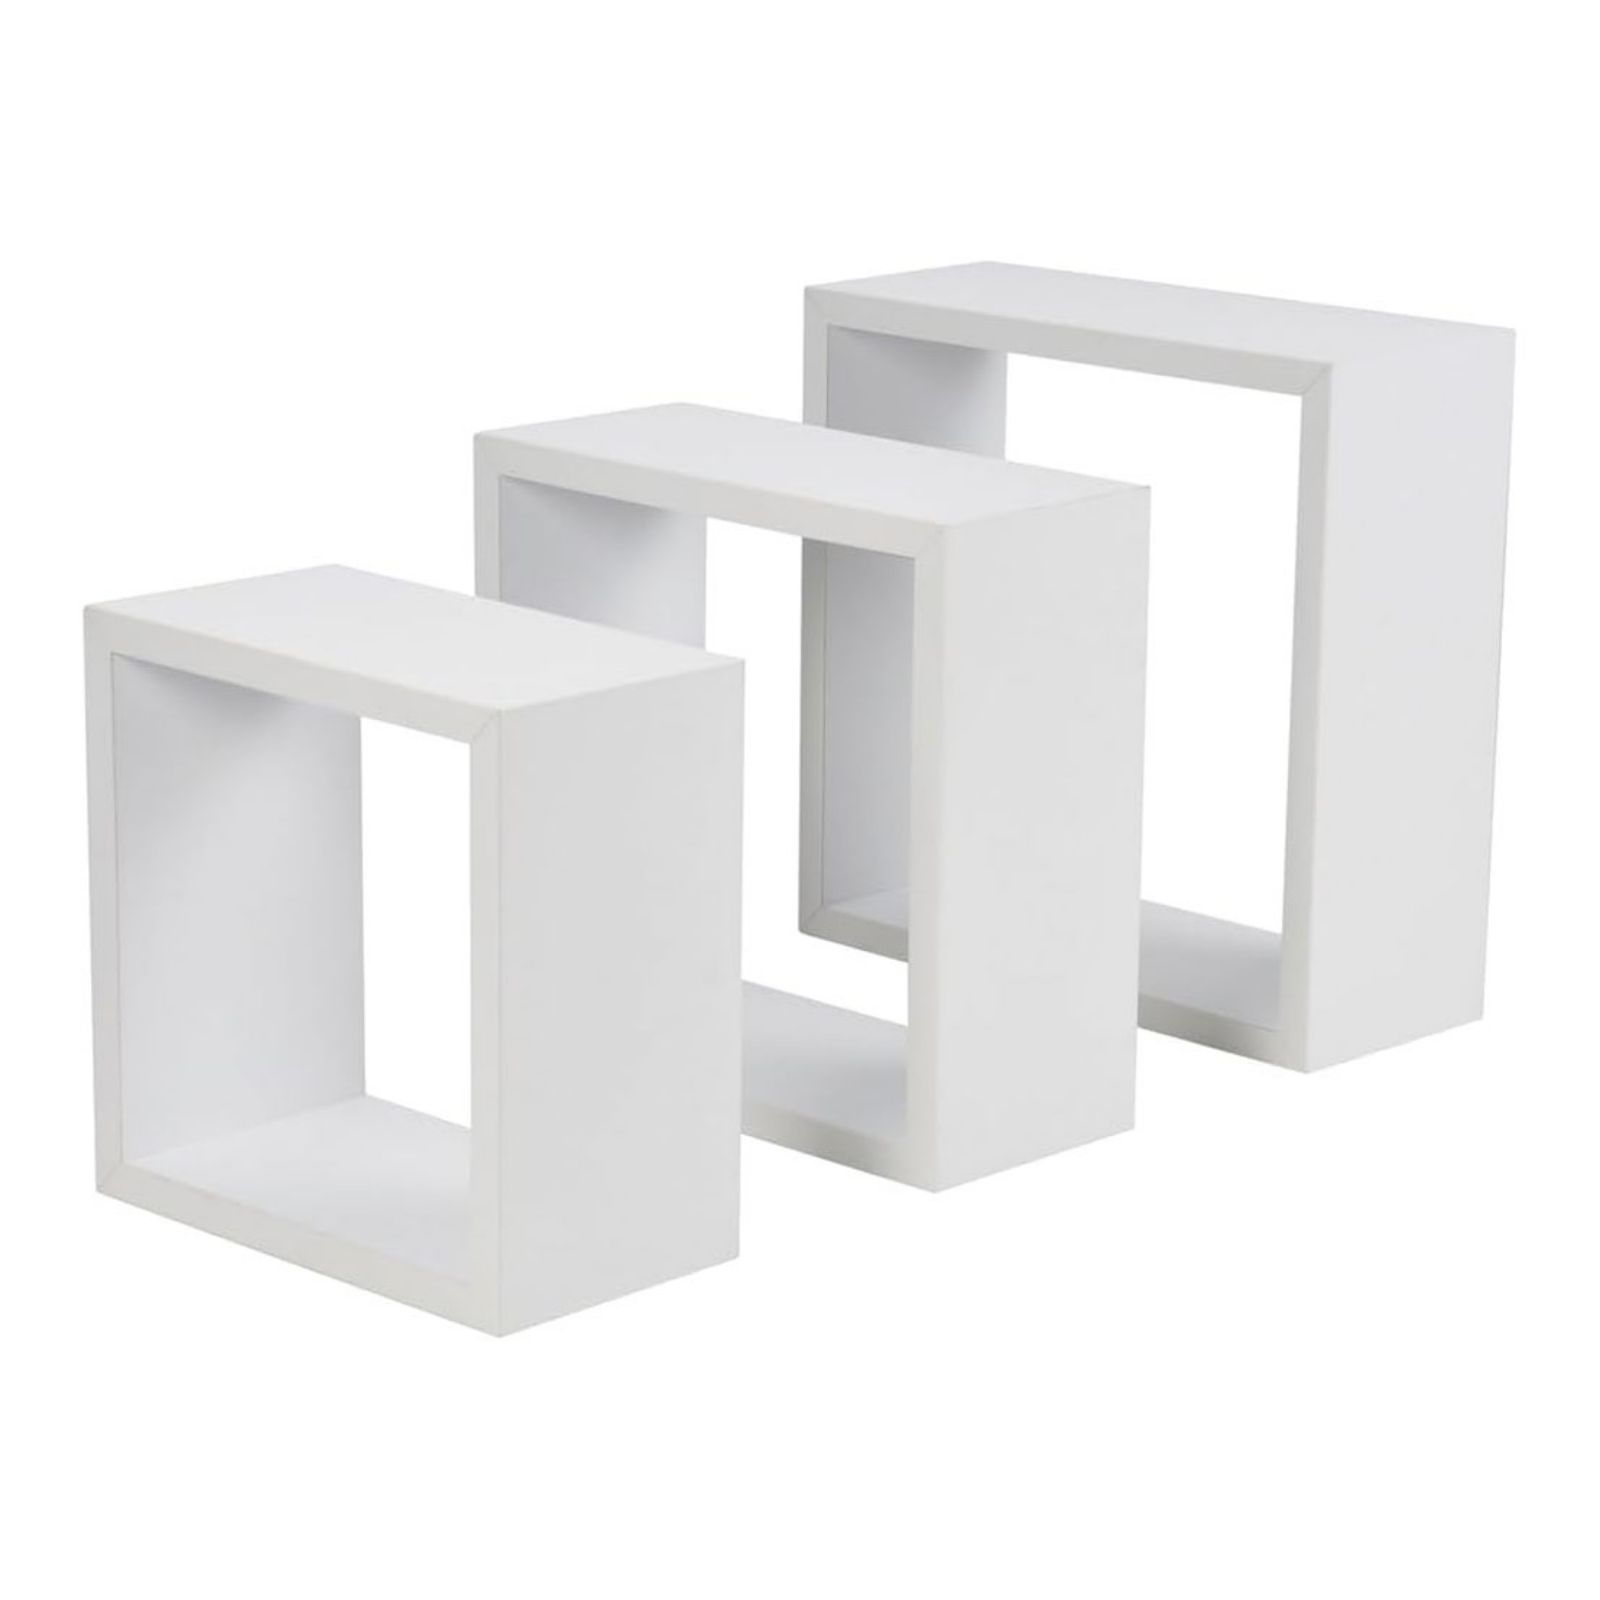 Imagen de Estantería para Pared en 3 Cubos Blanco